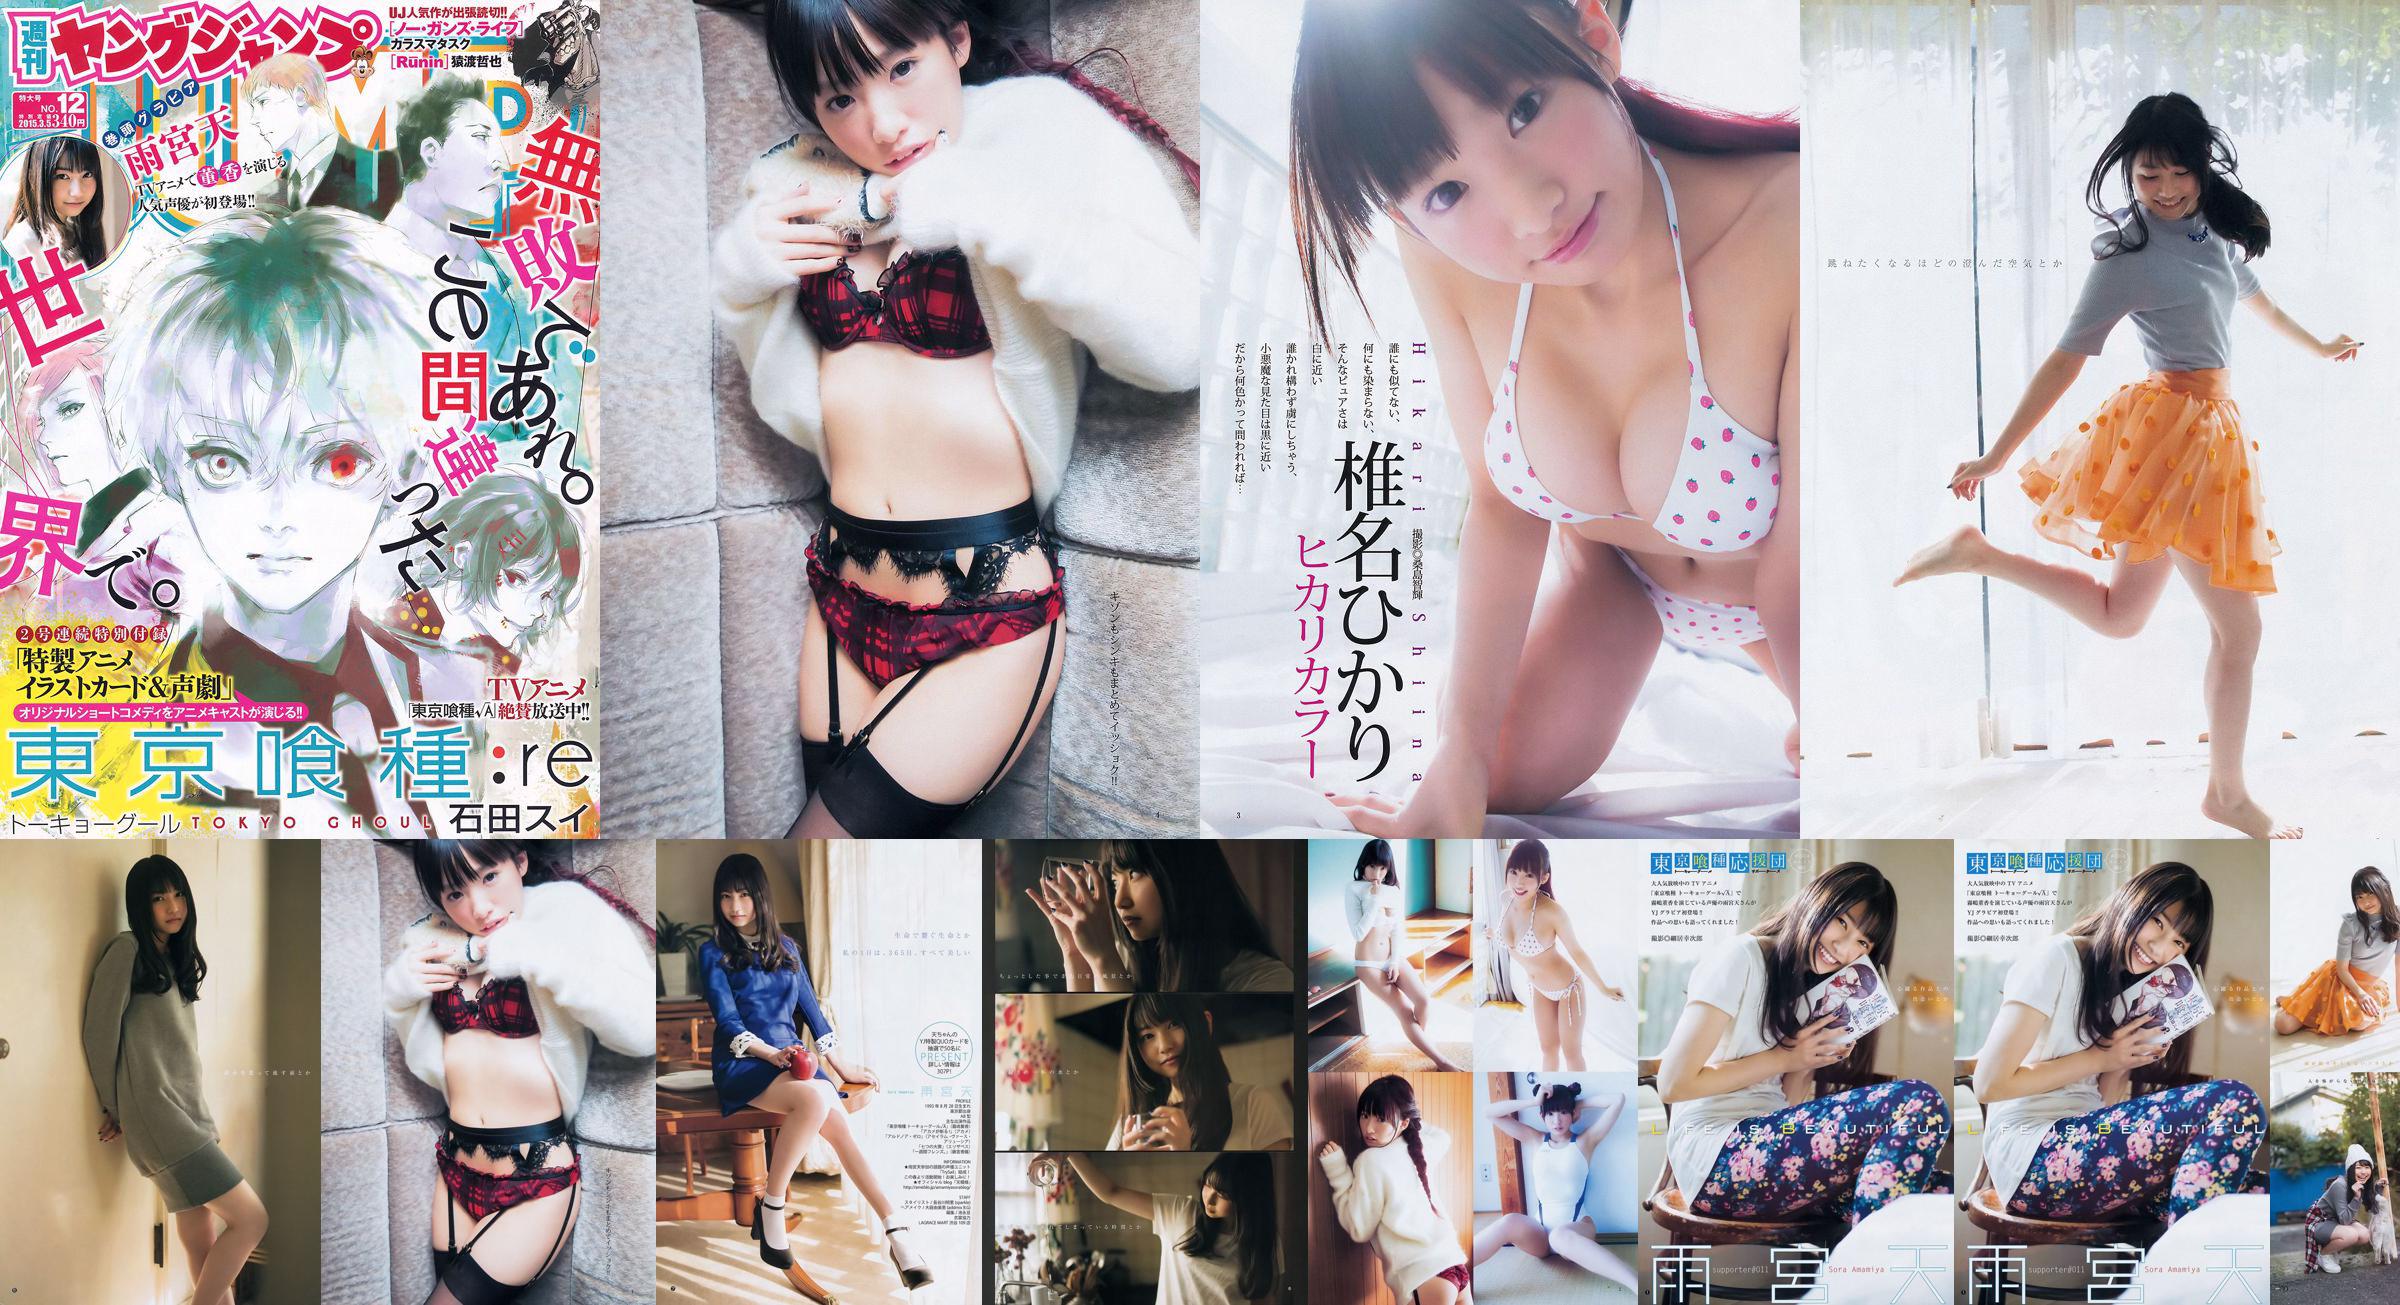 Amamiya Tian Shiina ひかり [Weekly Young Jump] 2015 No.12 Photo Magazine No.570840 Página 1